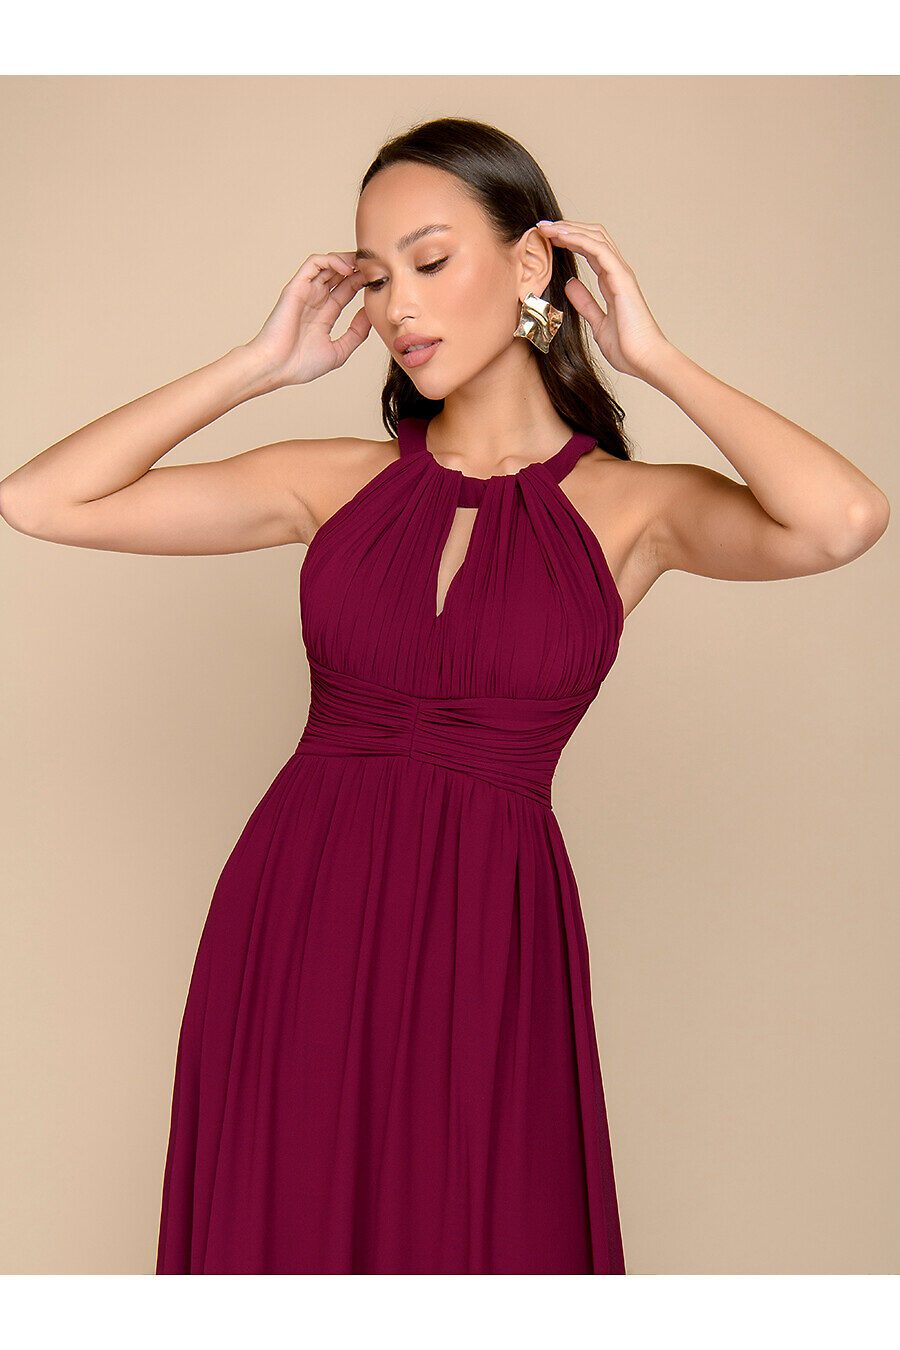 Платье для женщин 1001 DRESS 775601 купить оптом от производителя. Совместная покупка женской одежды в OptMoyo